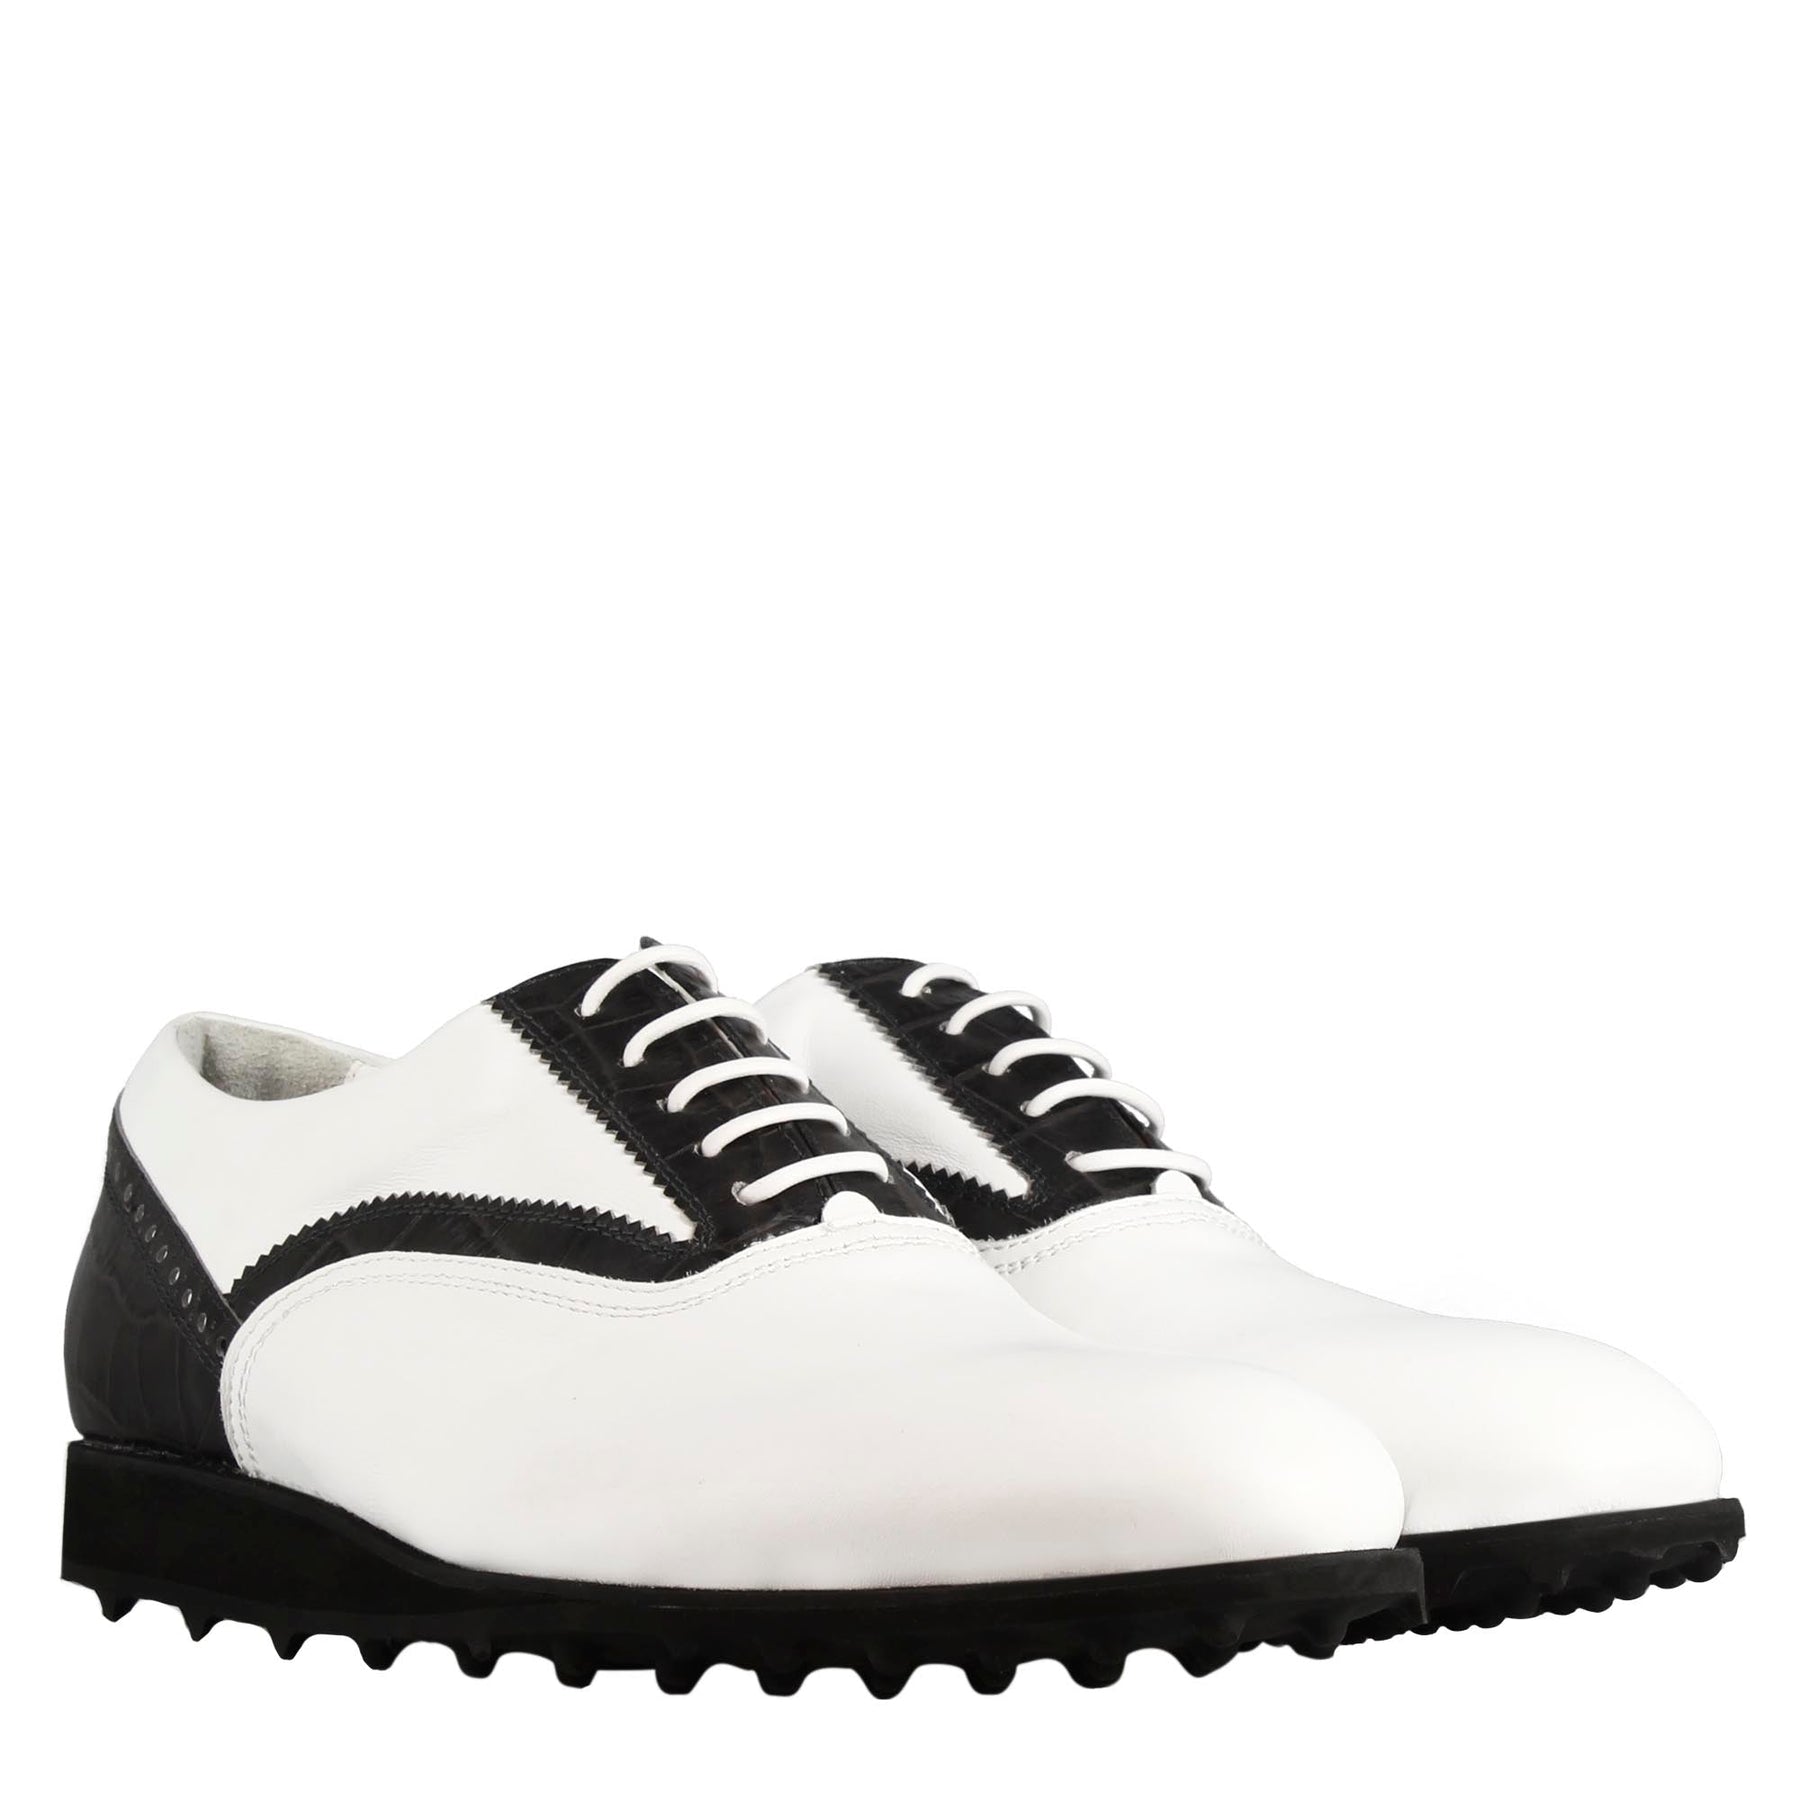 Chaussure de golf pour homme faite à la main en cuir blanc avec détails noirs